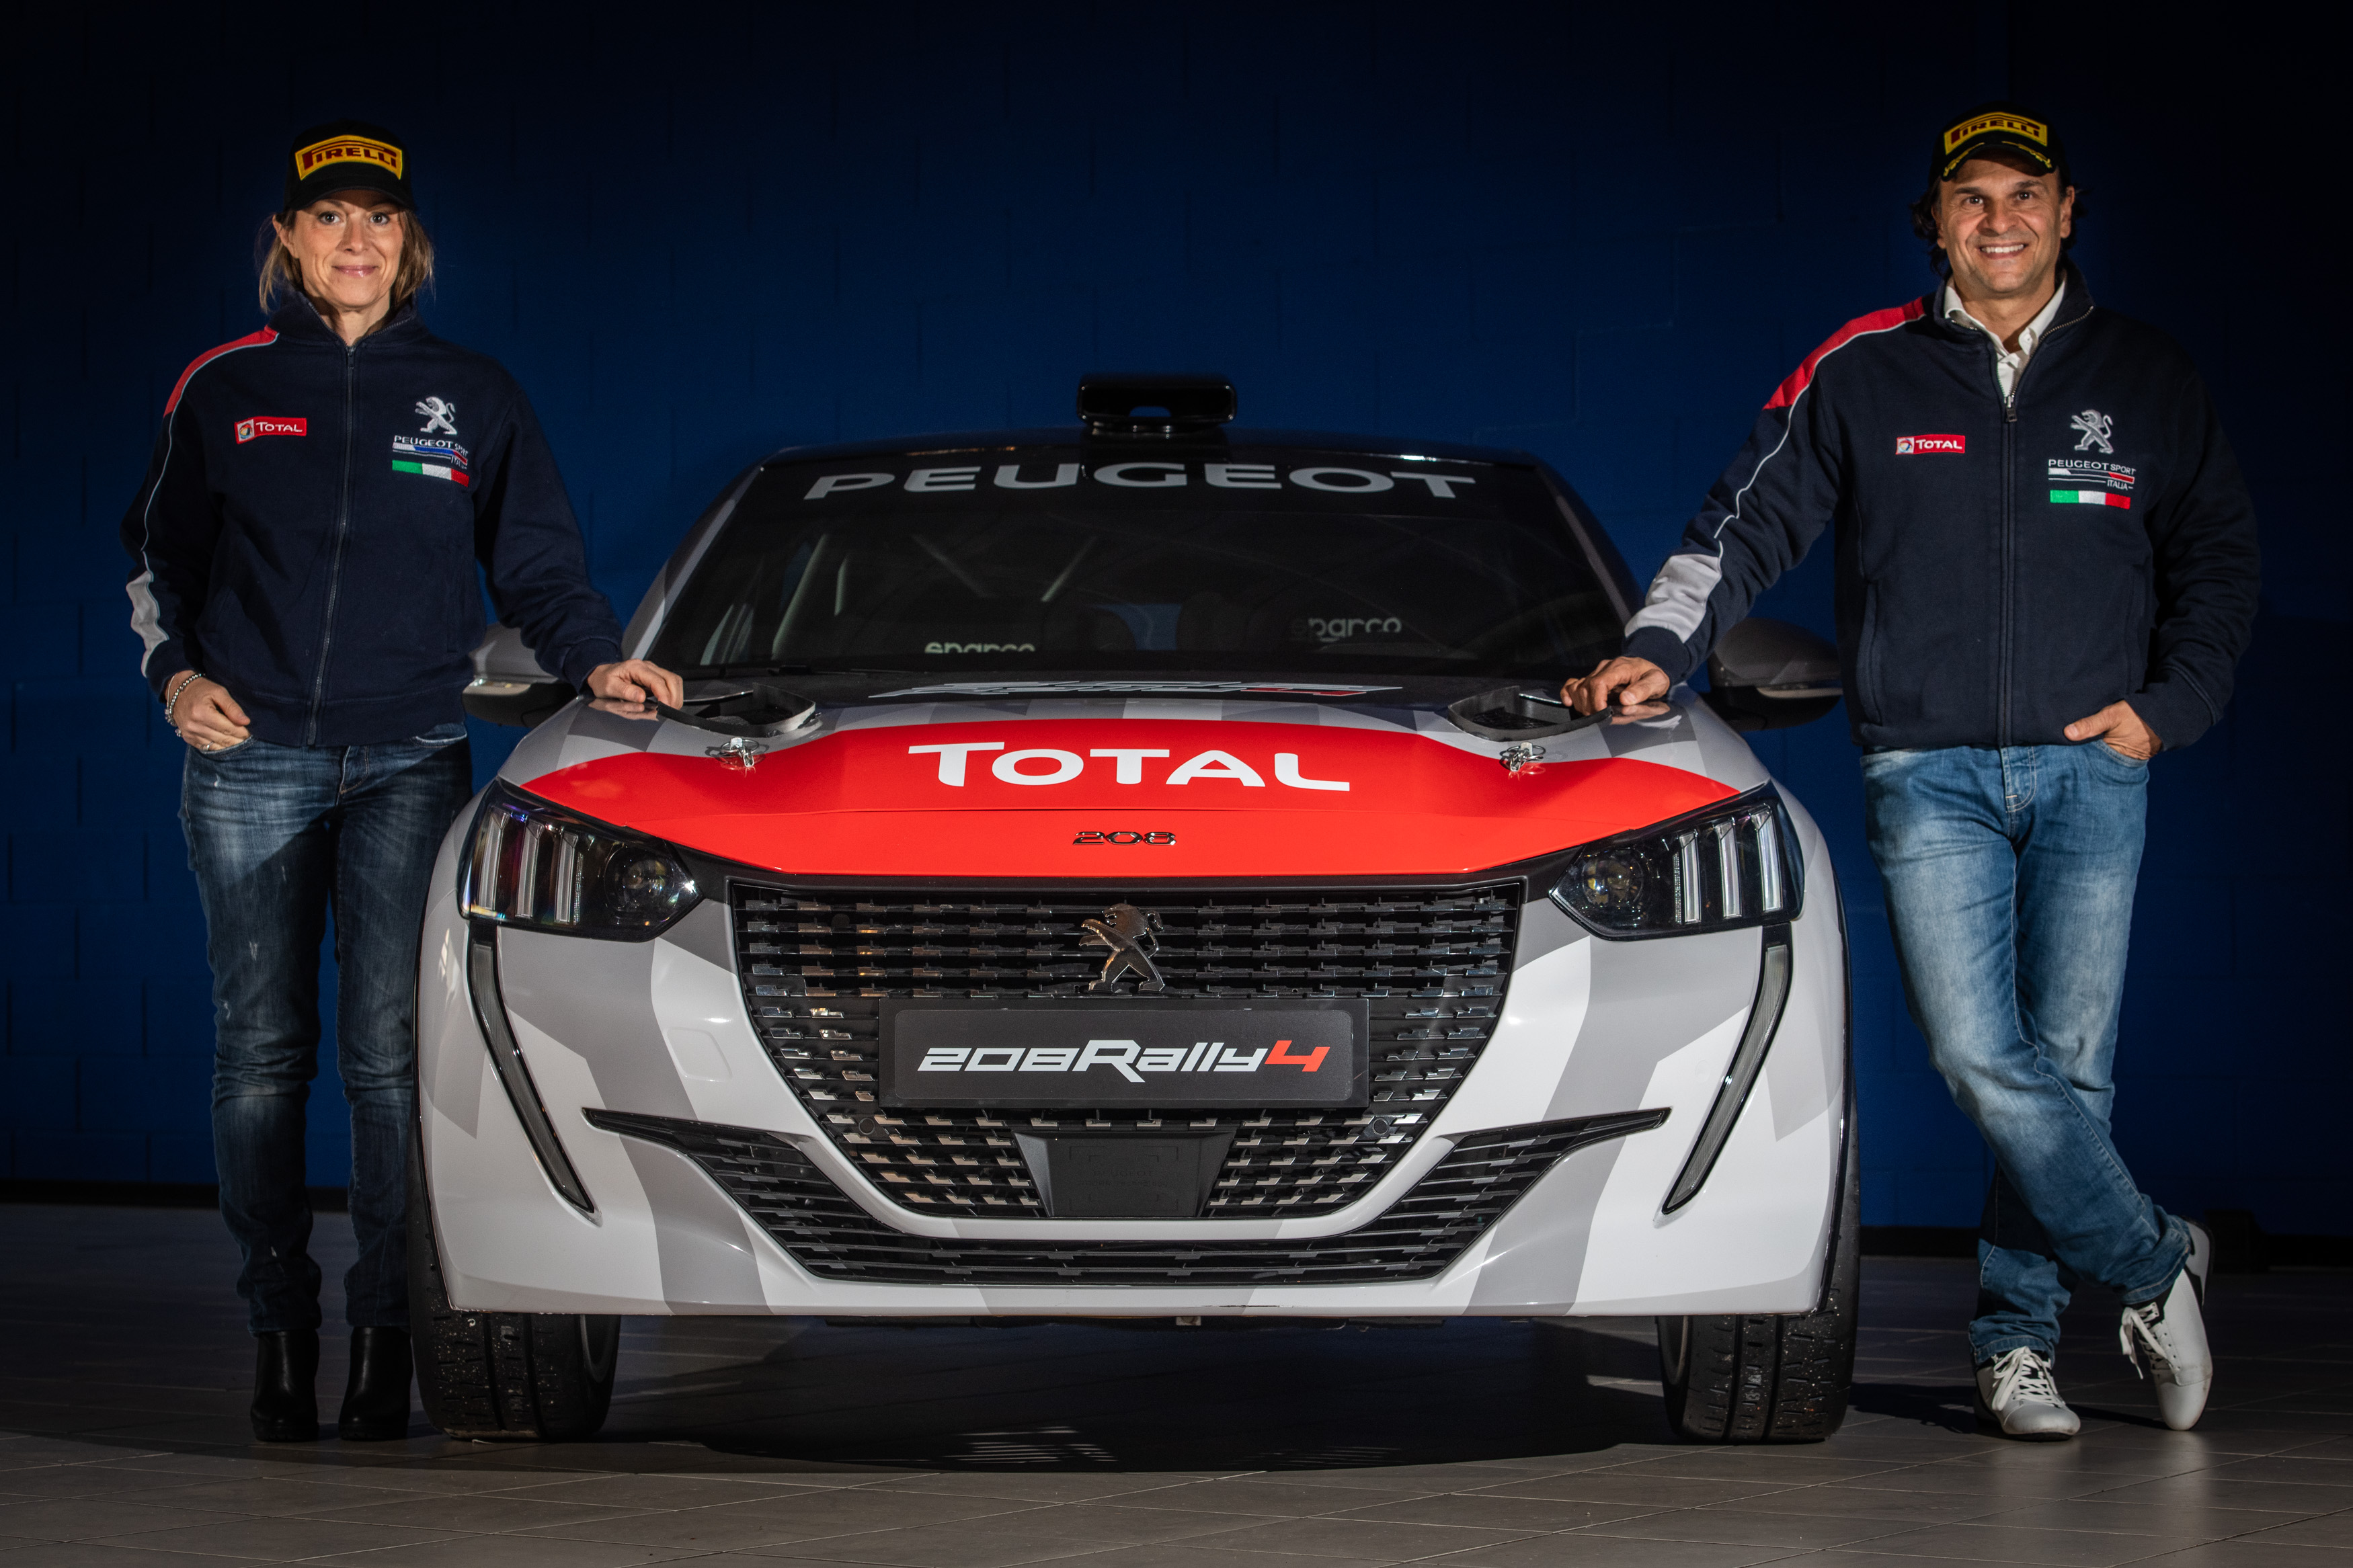 Simulatore Pirelli per lo sviluppo dei pneumatici - image Peugeot-208-Rally-4-con-Paolo-e-Anna on https://motori.net